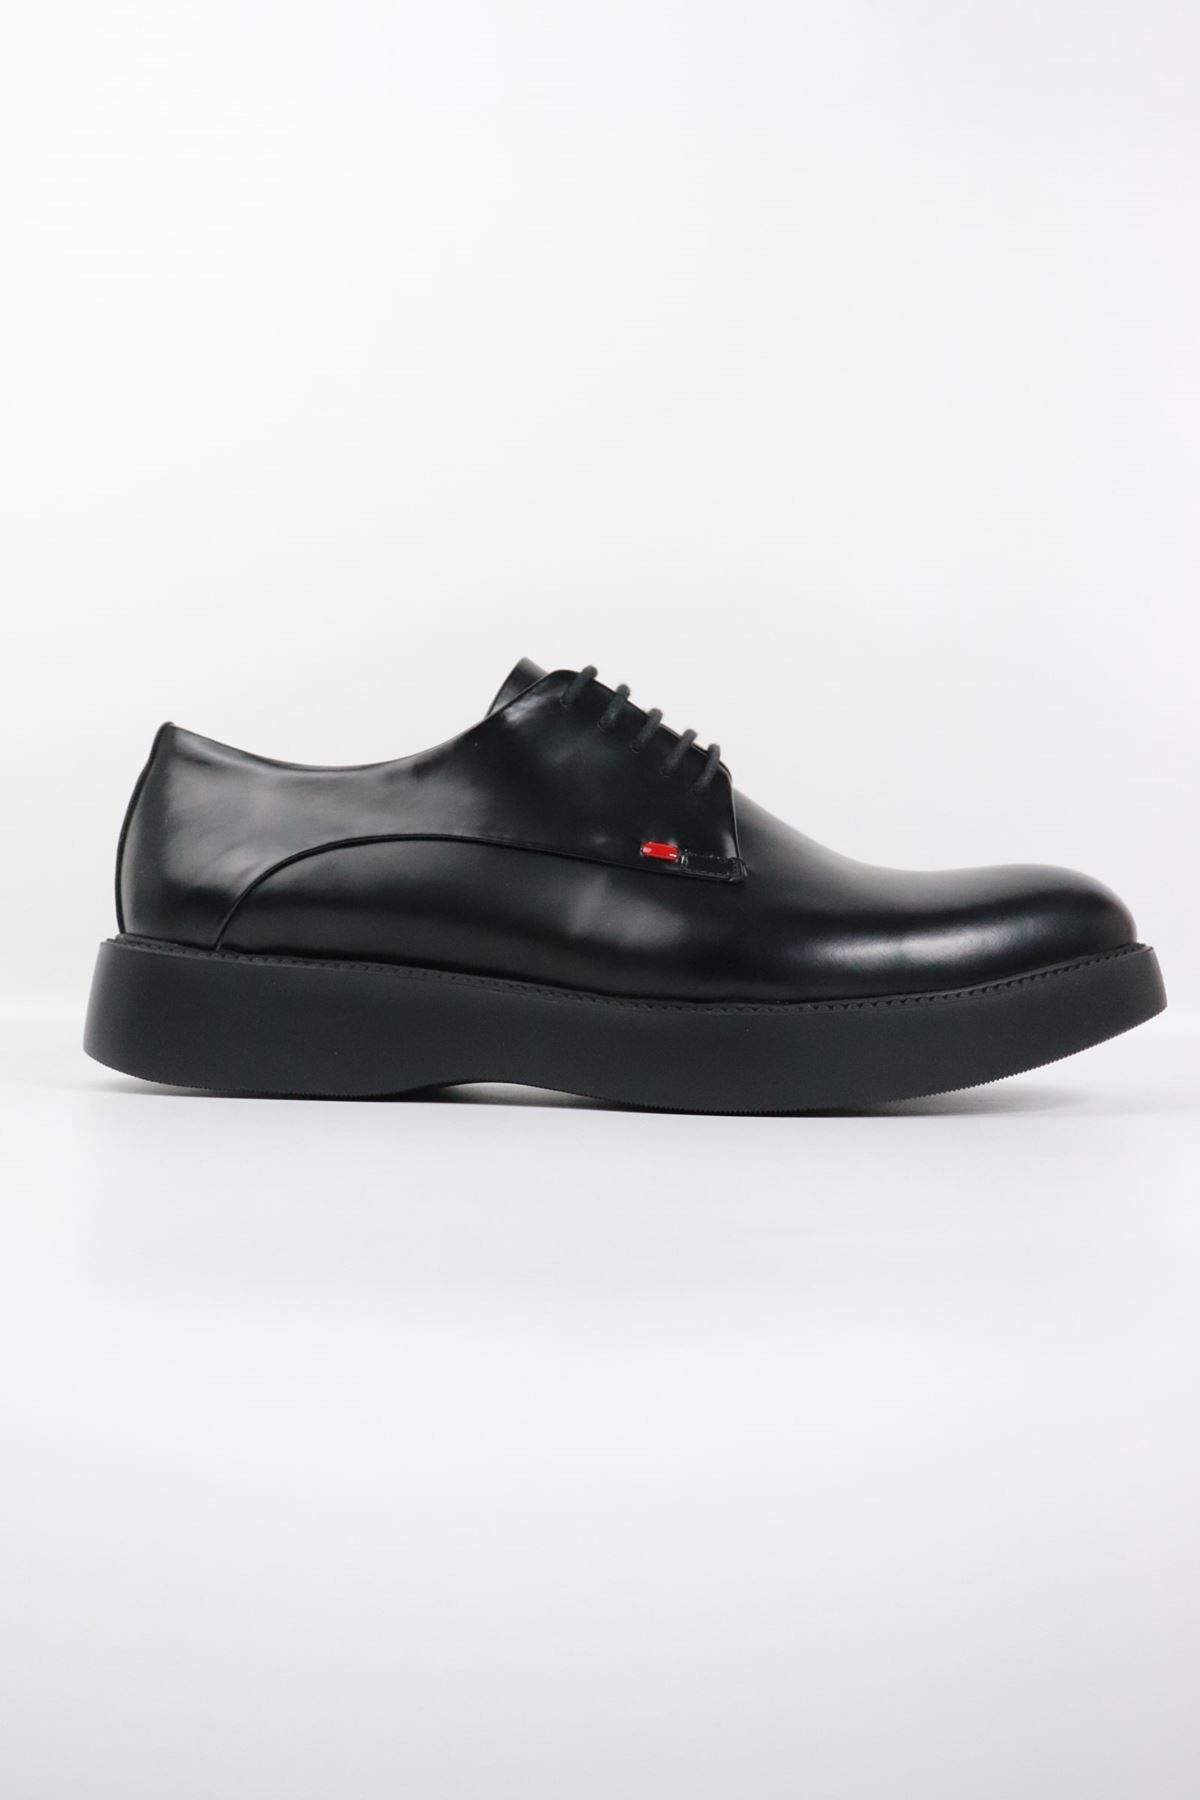 Fosco - 9783 Kalın Taban Siyah Rugan Erkek Klasik Ayakkabı